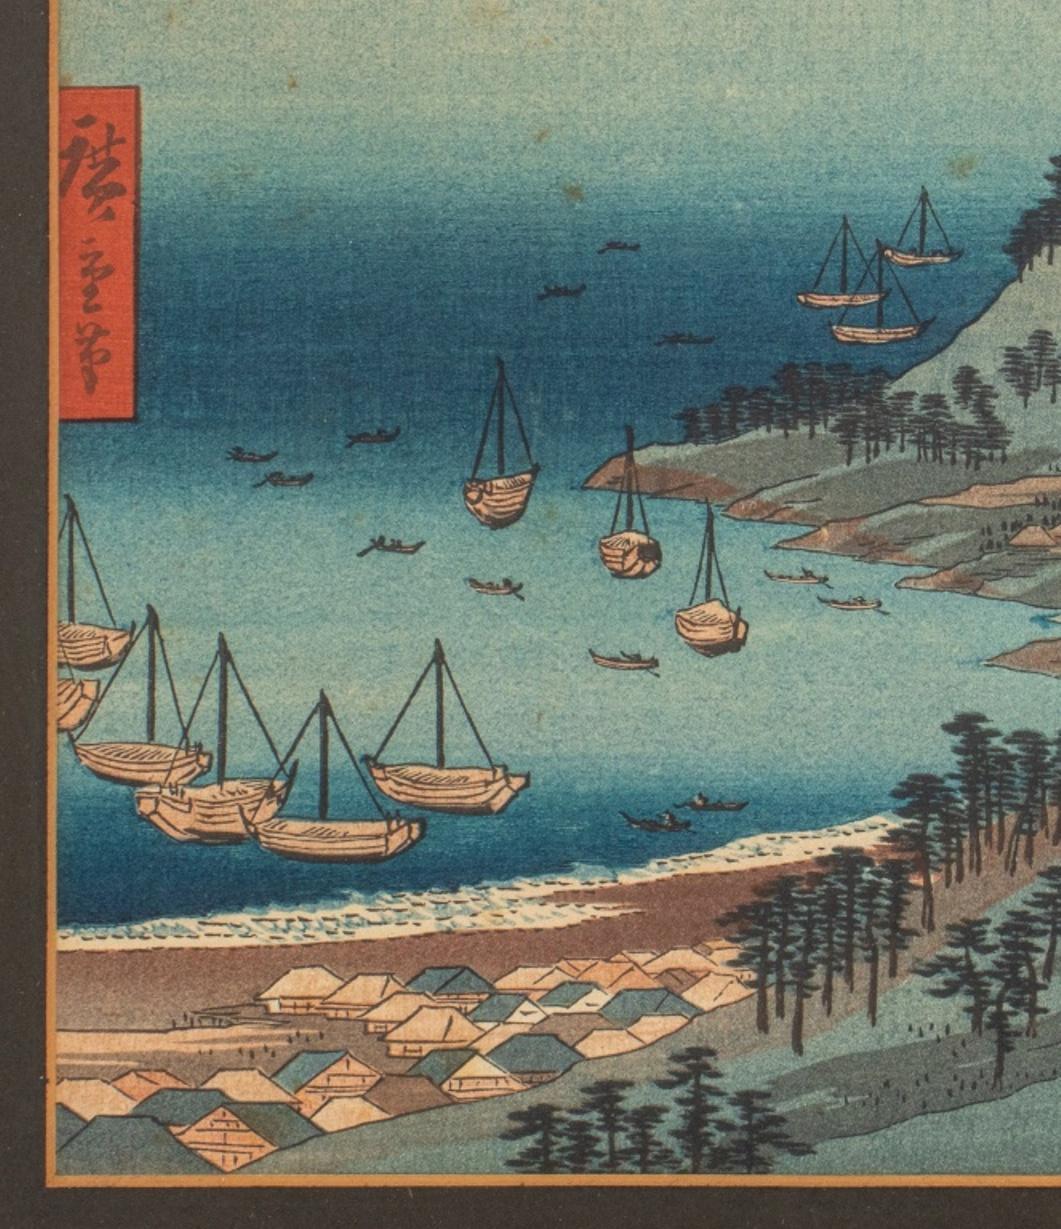 Nach Utagawa Hiroshige (Japaner, 1797-1858) Japanischer Farbholzschnitt auf Papier mit einer Darstellung der Toba-Bucht und des Mont Hijori in Shima, in einem weiß lackierten Holzrahmen.

Abmessungen: Bild: 10,25